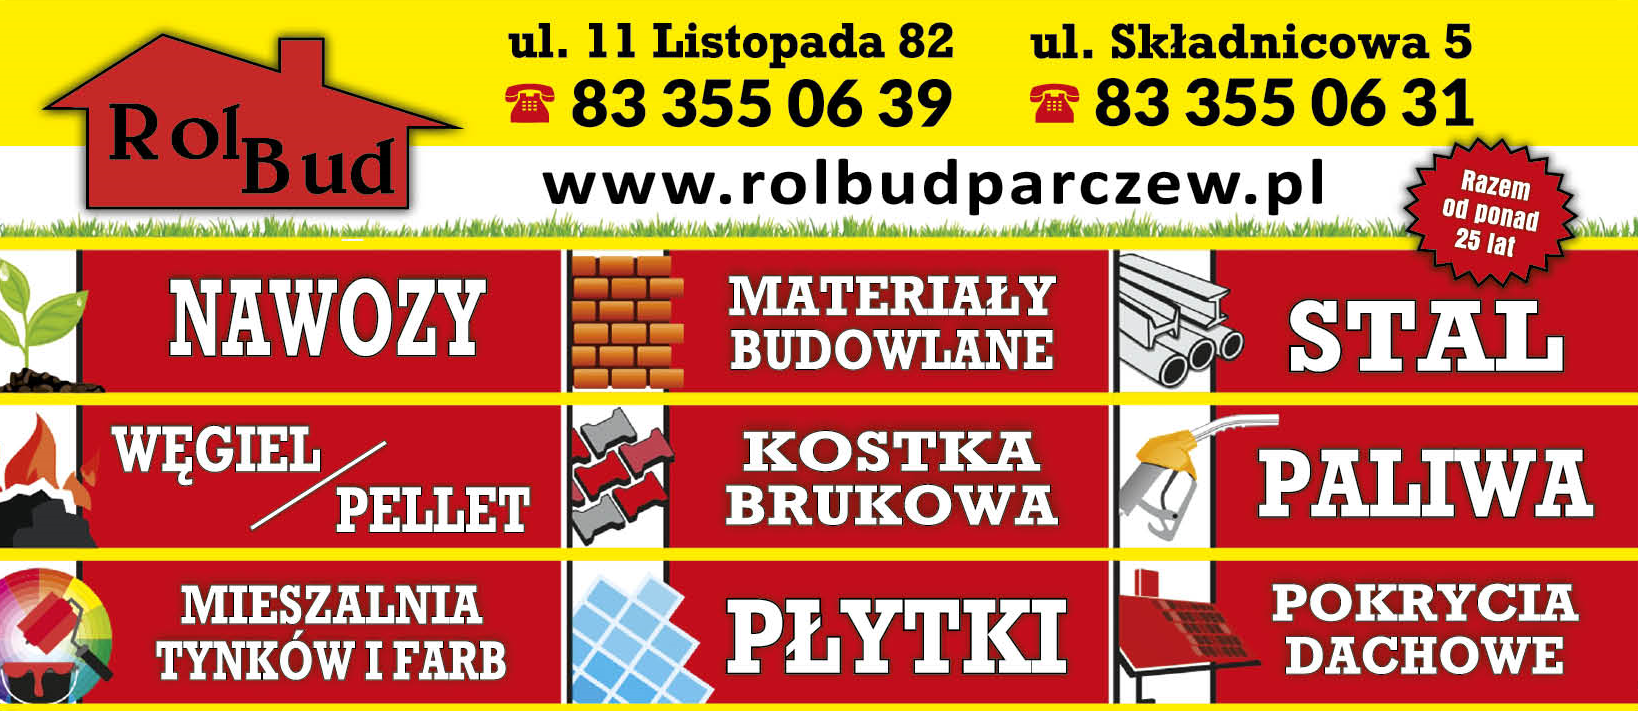 P.P.U.H. ROLBUD Parczew Węgiel / Mat. Budowlane / Pokrycia Dachowe / Kostka Brukowa / Nawozy